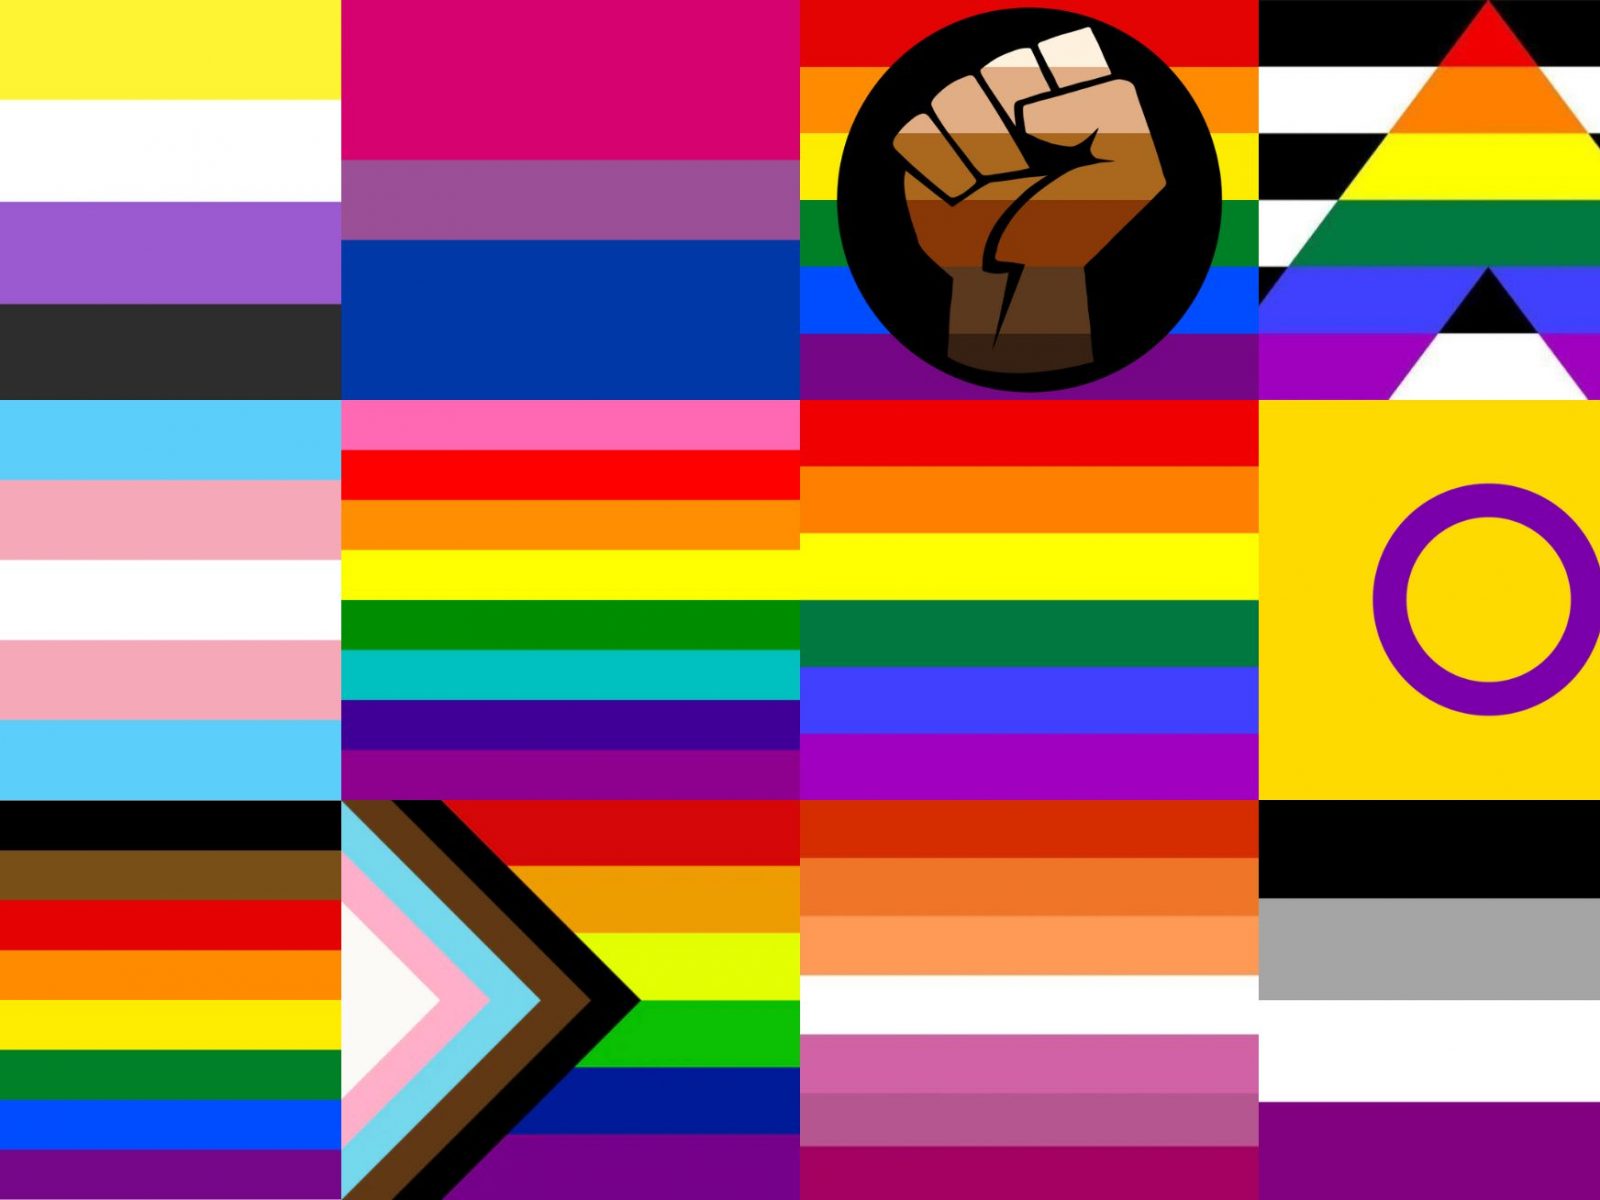 Truy cập ngay ảnh đầy màu sắc và tươi vui của các lá cờ LGBTQIA+ Flags, giúp bạn hiểu rõ hơn về chủ đề mang tính nhân văn hơn bao giờ hết. Hãy để tự do và sự đa dạng trở thành nguồn cảm hứng cho bạn nhé!